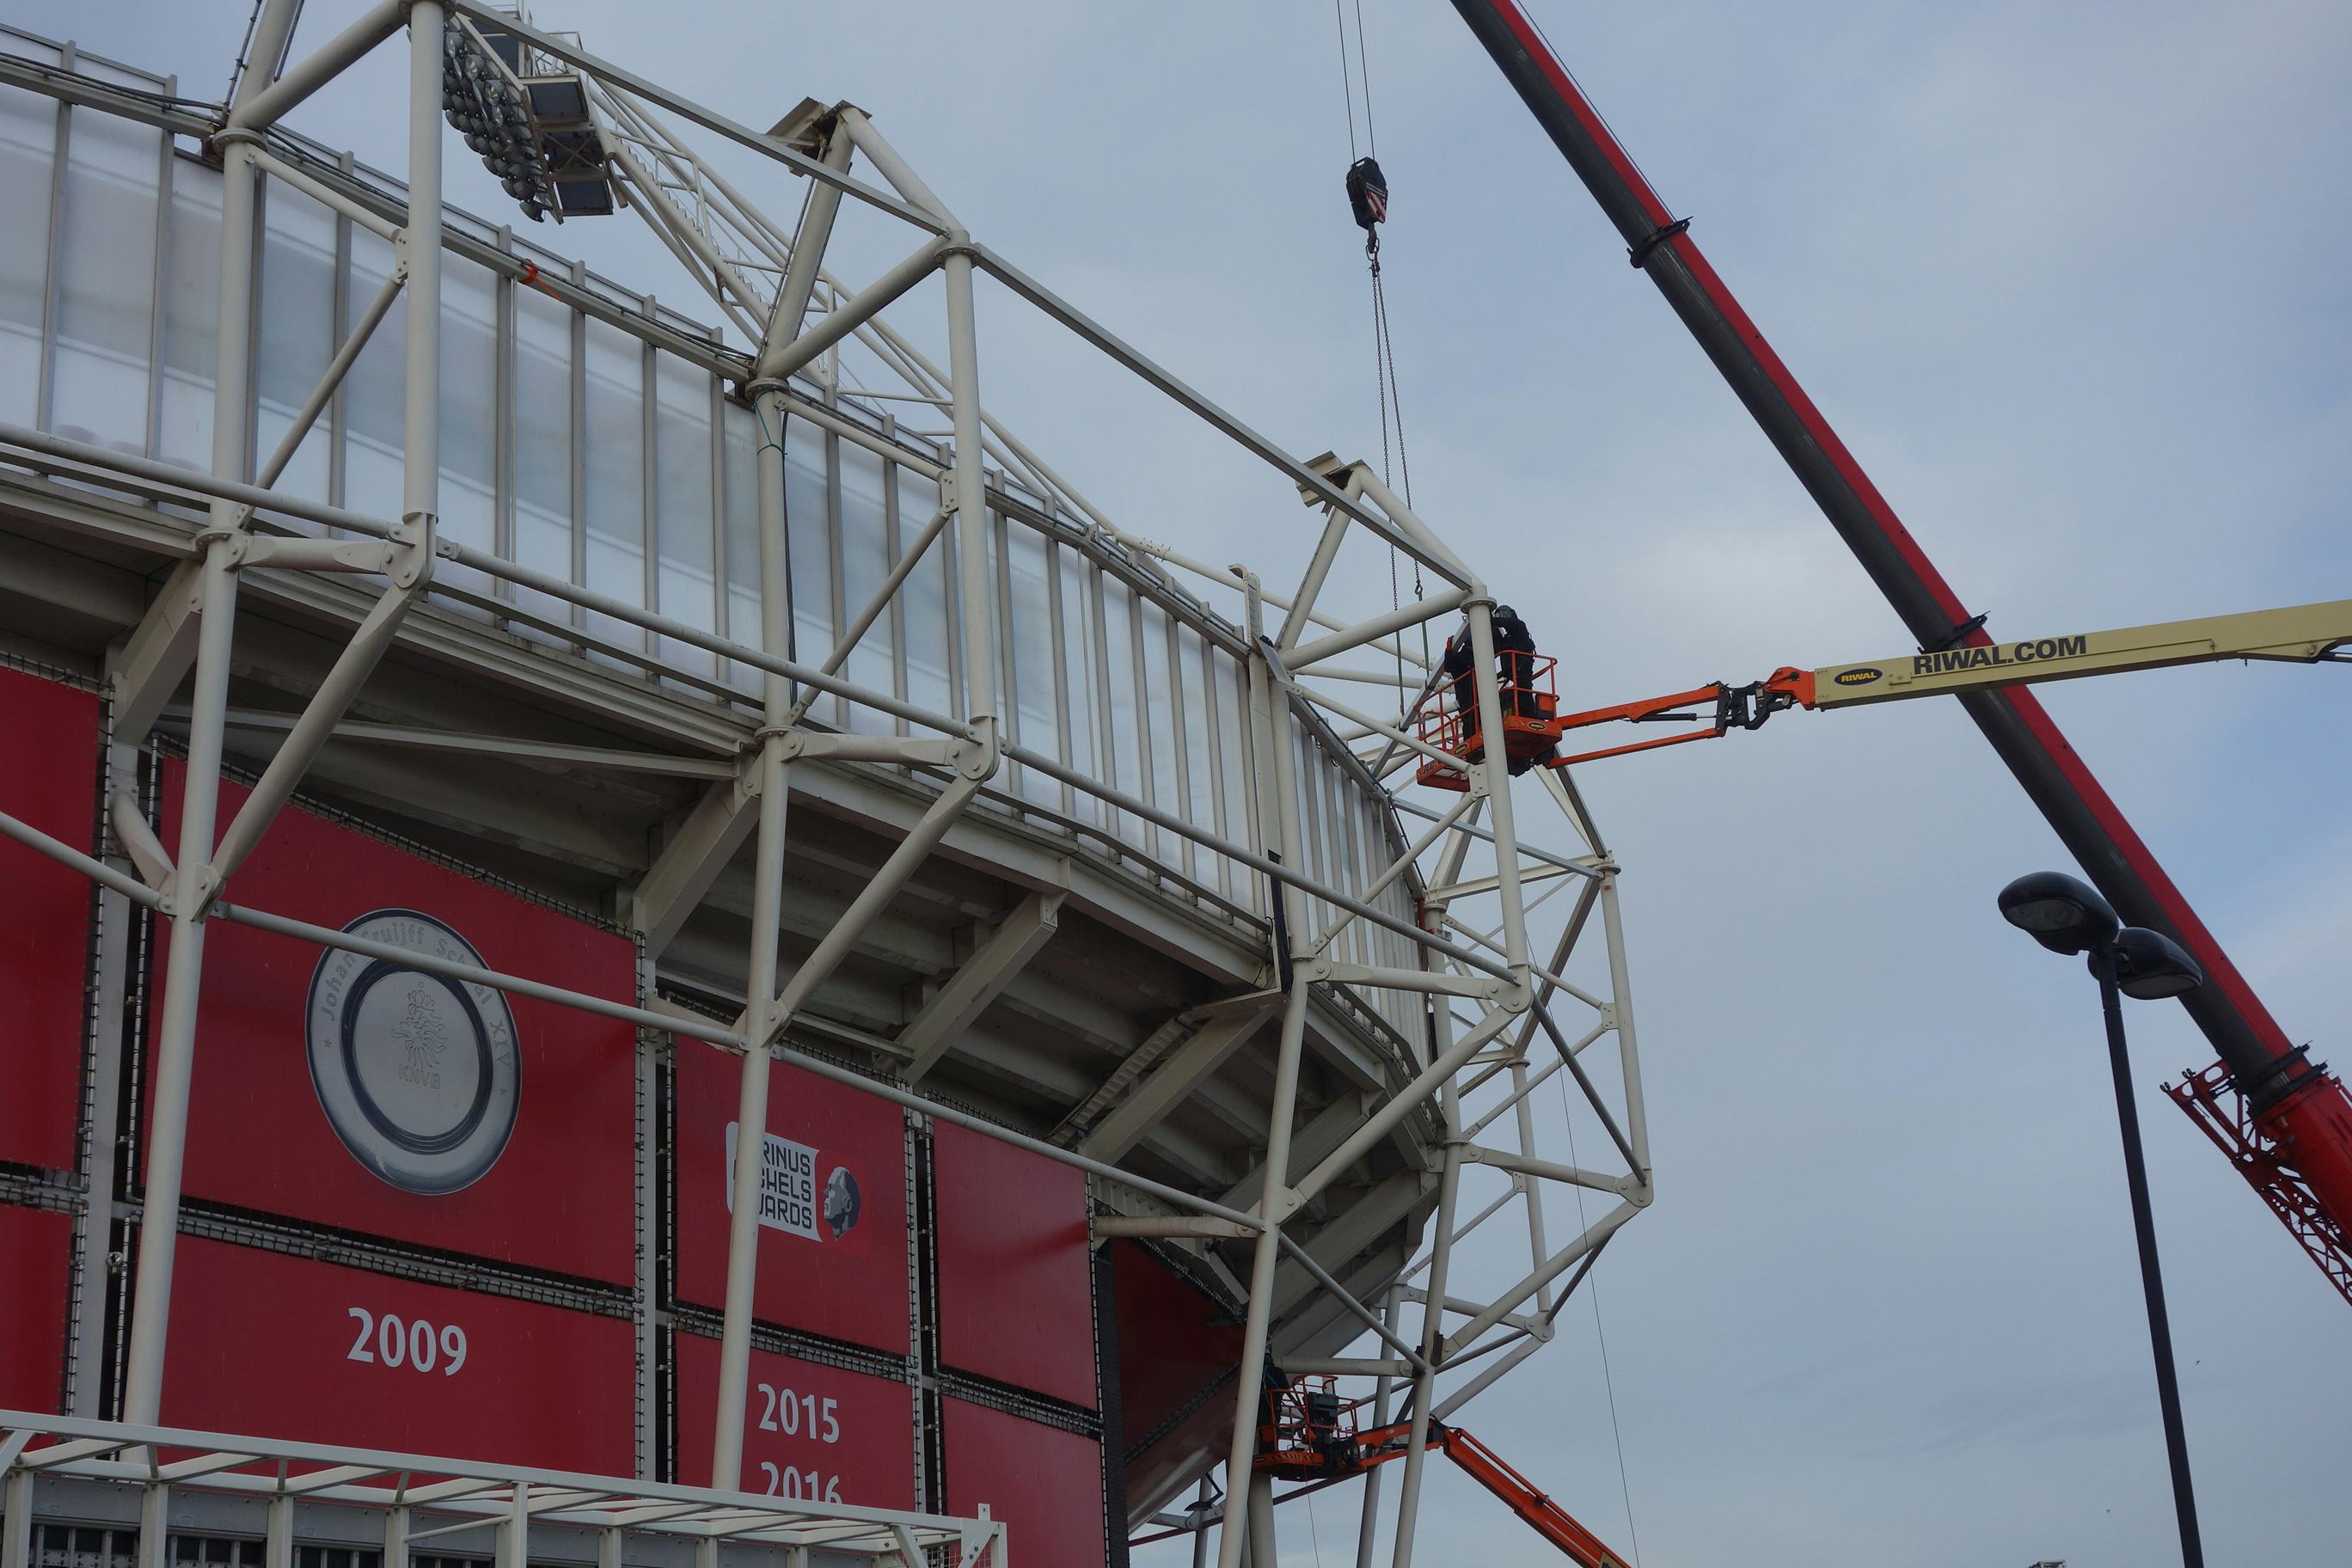 Hoe vier constructeurs dag en nacht doorwerken om het AZ-stadion zondag veilig te krijgen: 'Het is een pressure cooker'